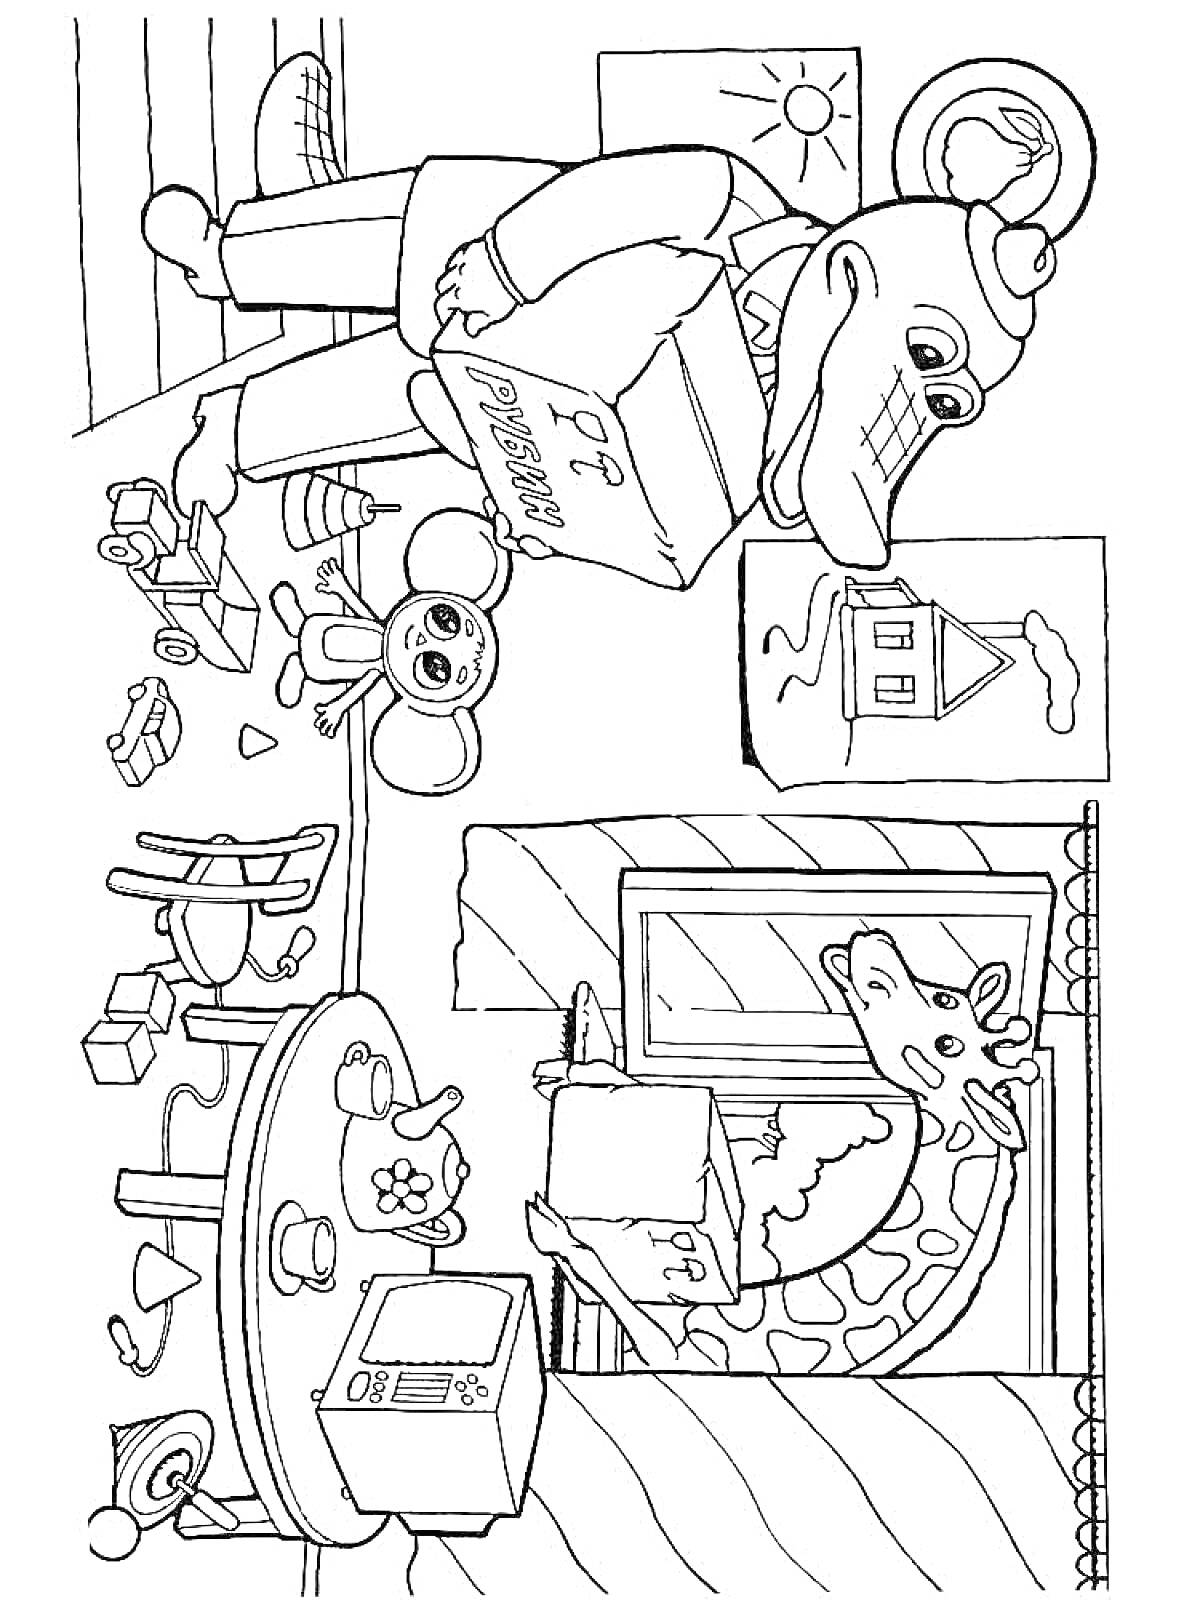 Крокодил Гена с книгой, Чебурашка, жираф у окна, дом, солнце, стол с микроволновкой, посуда и игрушки